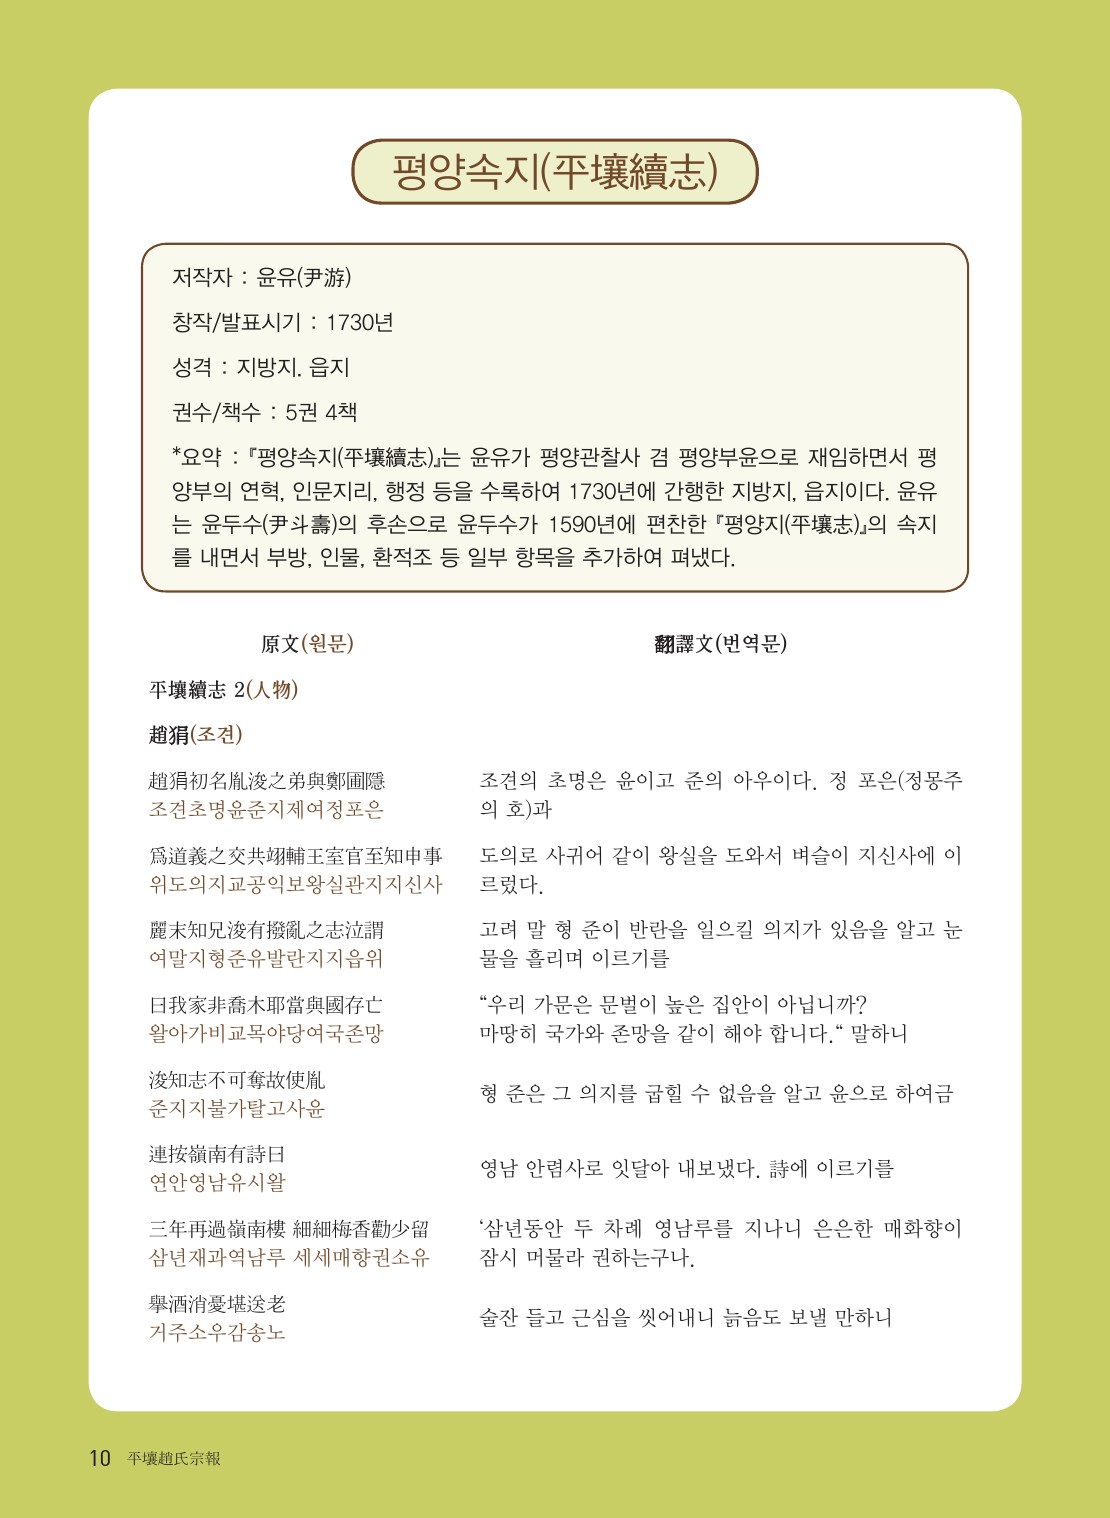 201013 평양조씨종보(51호)-수정-5-10.jpg